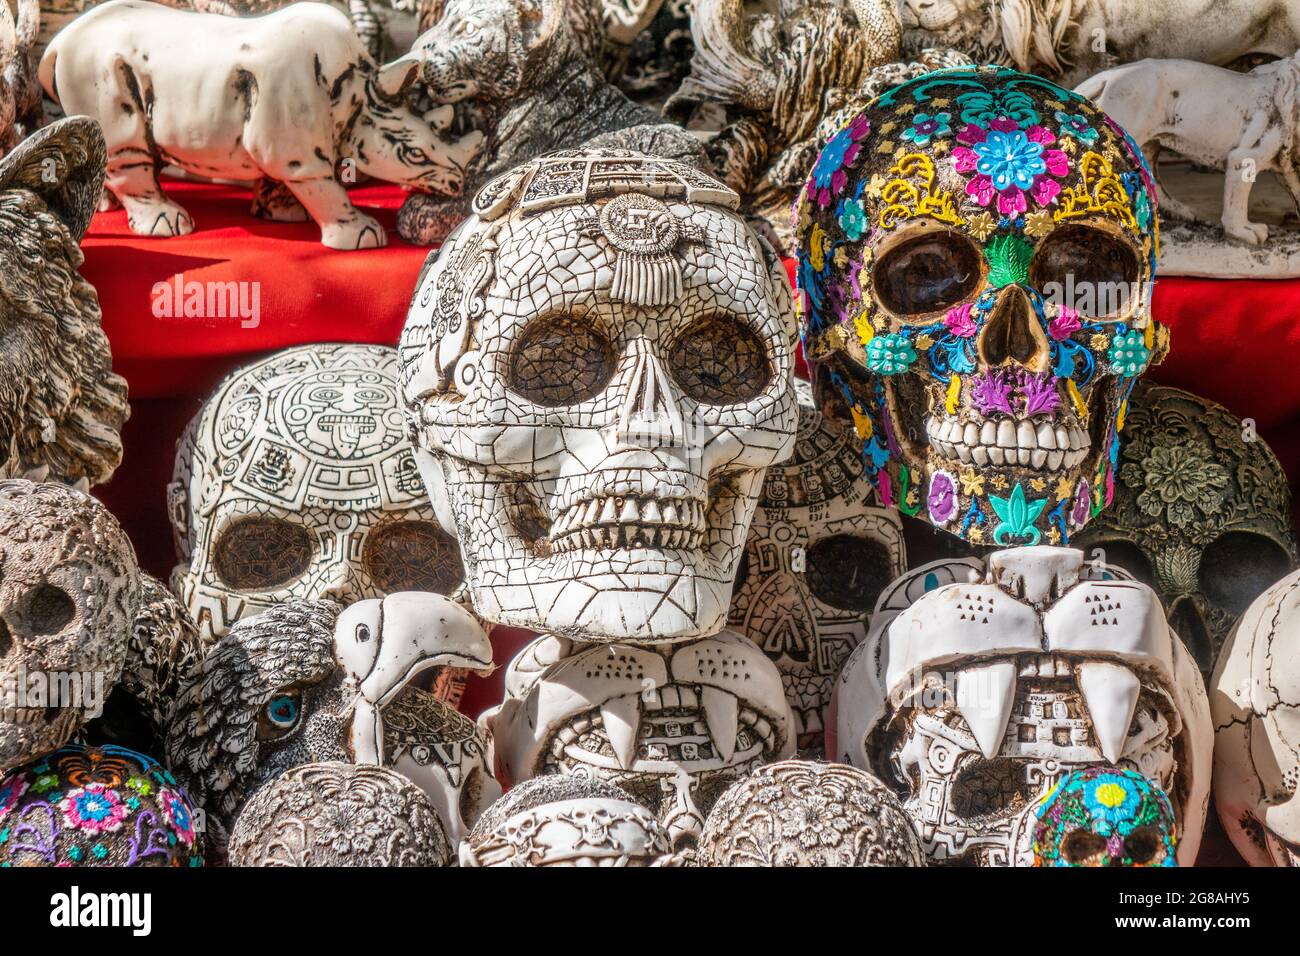 https://c8.alamy.com/compes/2g8ahy5/exposicion-de-souvenir-mexican-skull-ornaments-mercado-turistico-costa-maya-mexico-mexico-mexico-fiesta-mexicana-el-dia-de-los-muertos-dia-de-los-muertos-2g8ahy5.jpg